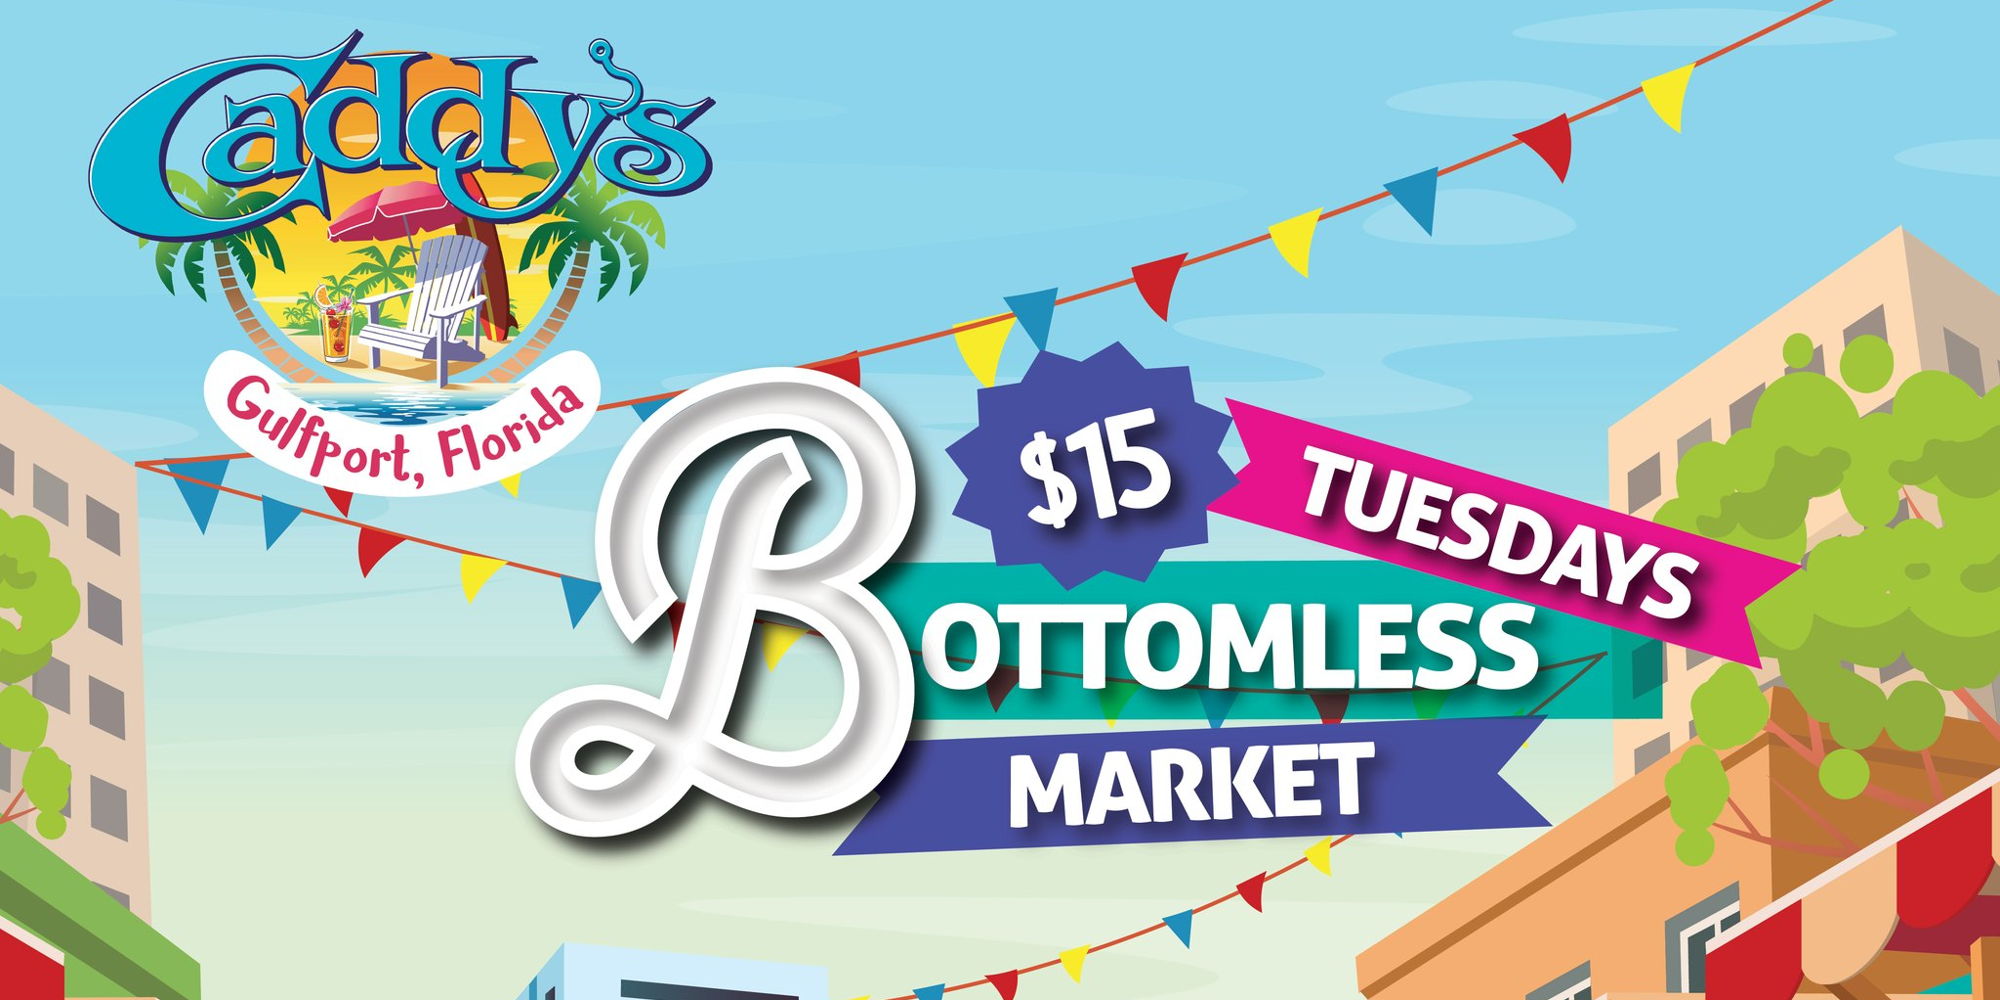 Tuesdays Bottomless Market! promotional image